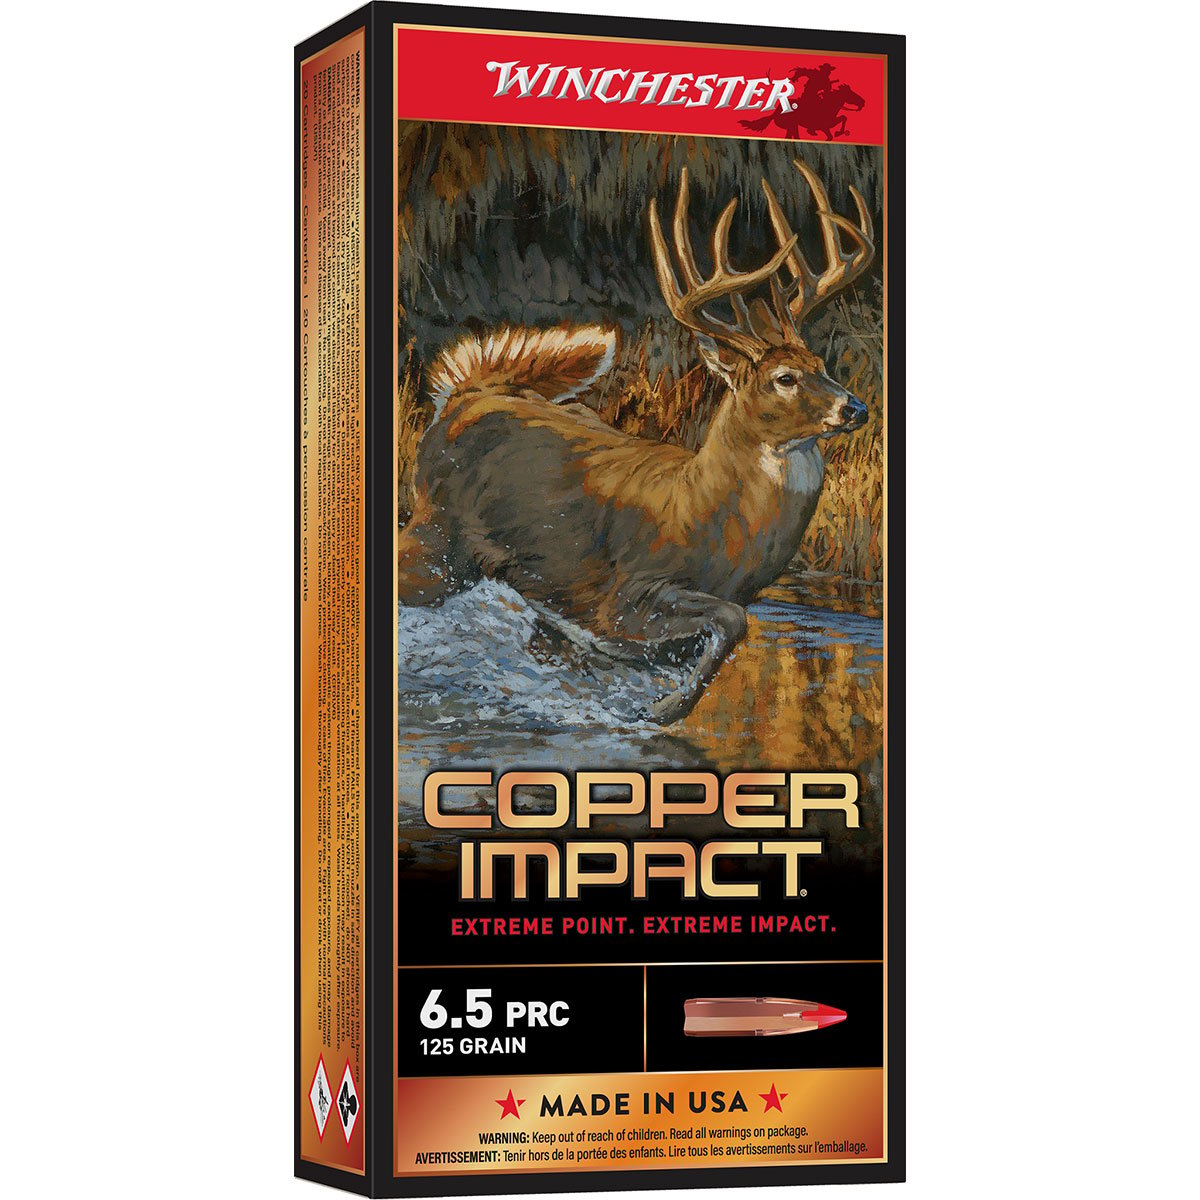 WINCHESTER - COPPER IMPACT 6.5 PRC RIFLE AMMO